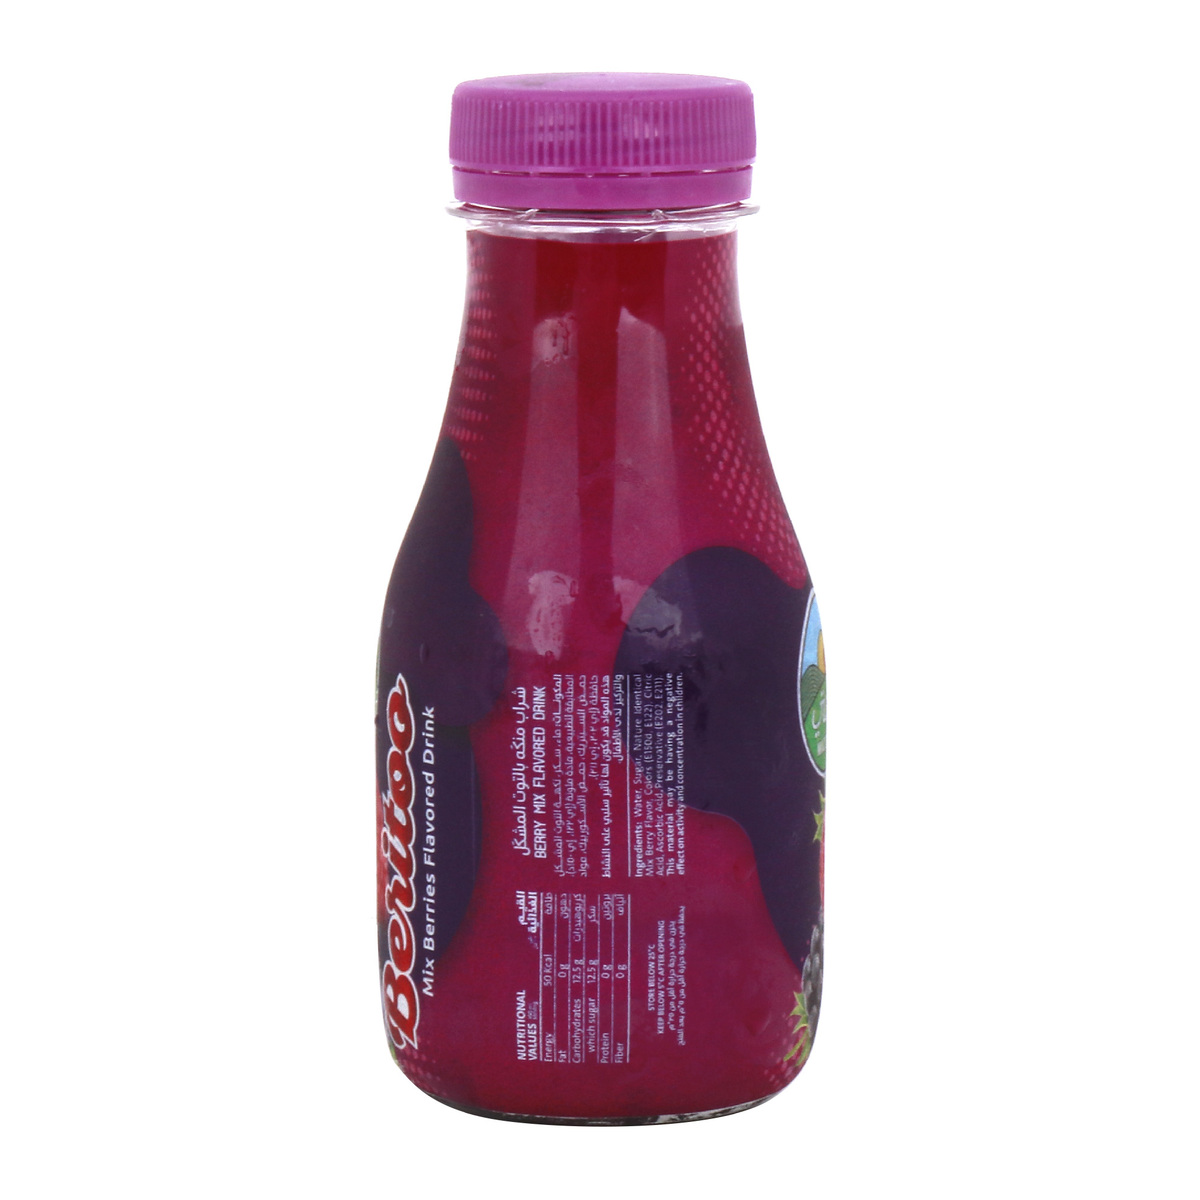 Mazzraty Beritoo Flavored Drink Mix Berries 240ml